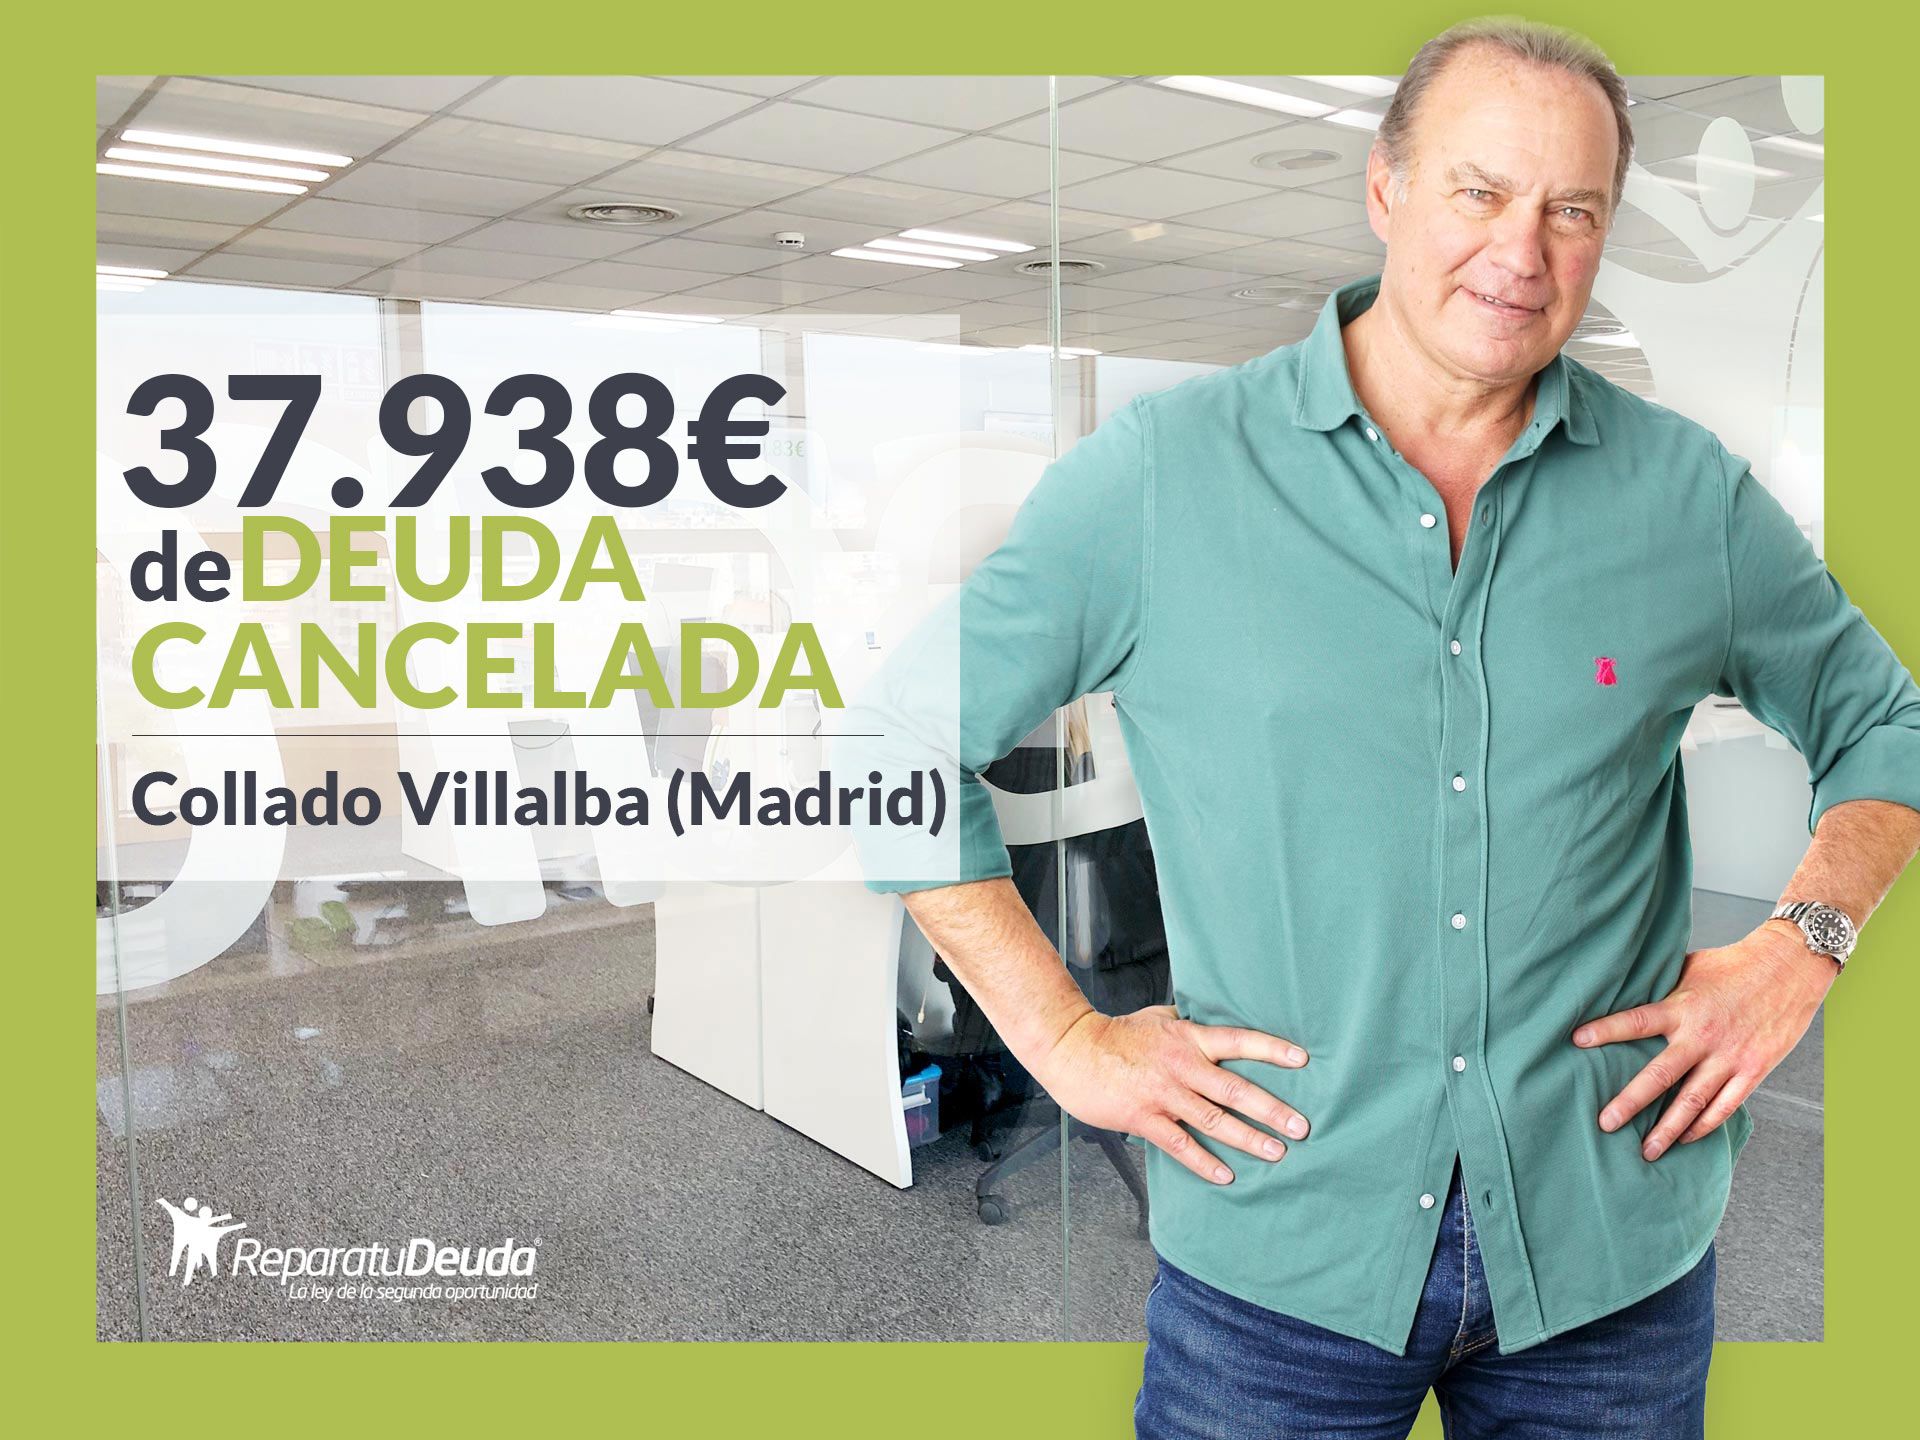 Repara tu Deuda Abogados cancela 37.938 ? en Collado Villalba (Madrid) con la Ley de Segunda Oportunidad